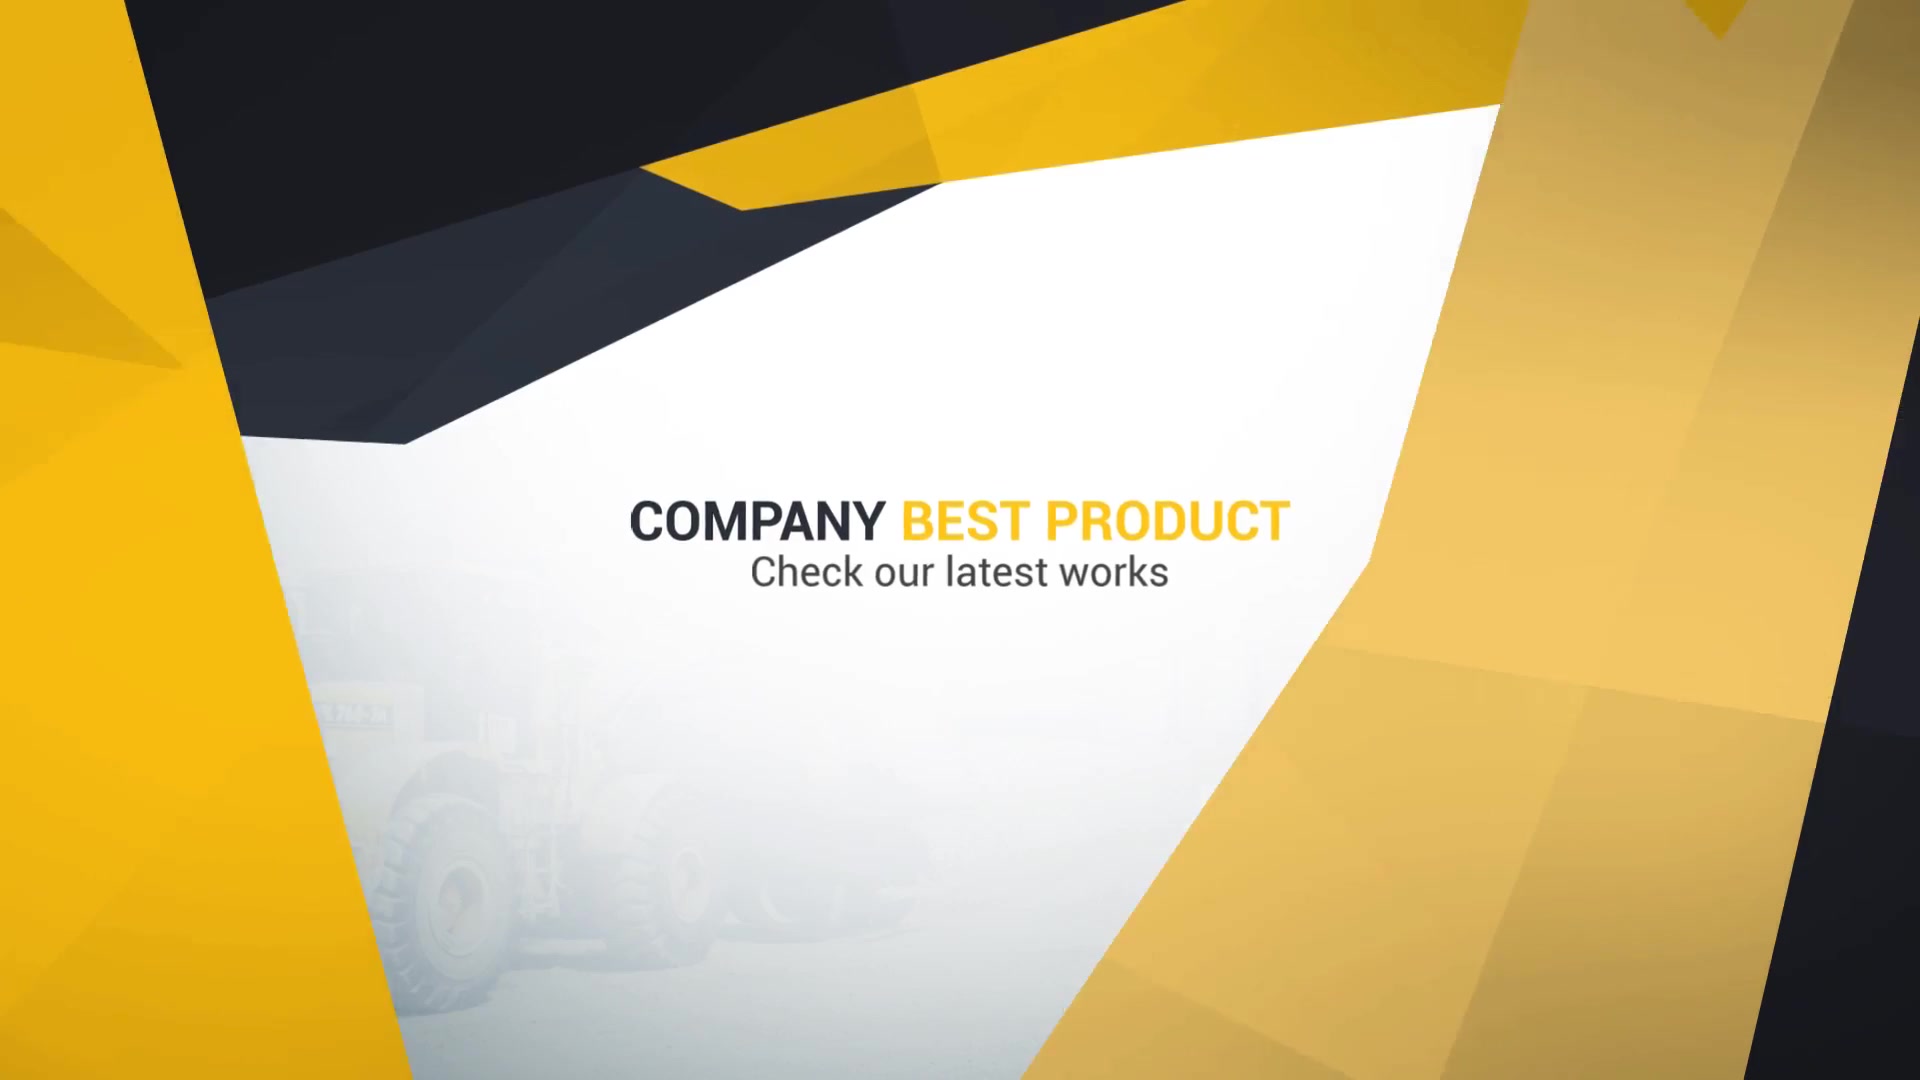 Clean Business Company Profile II Videohive 23875473 Premiere Pro Image 10